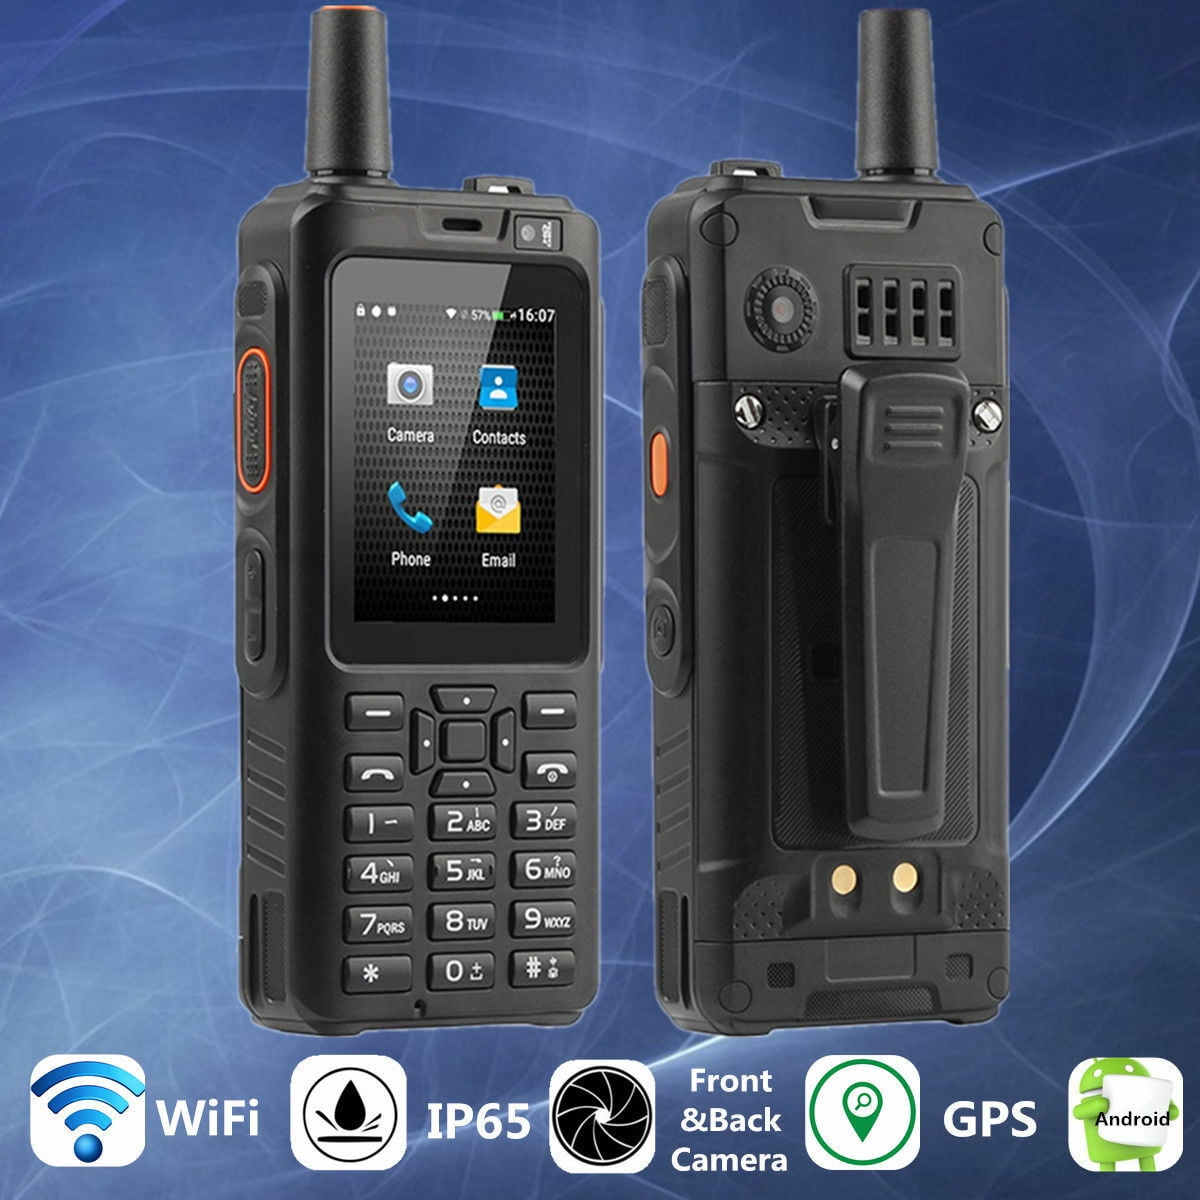 Alps F40 Zello Walkie Talkie 4G Smartphone Waterproof IP65 Rugged Mobile  Phone